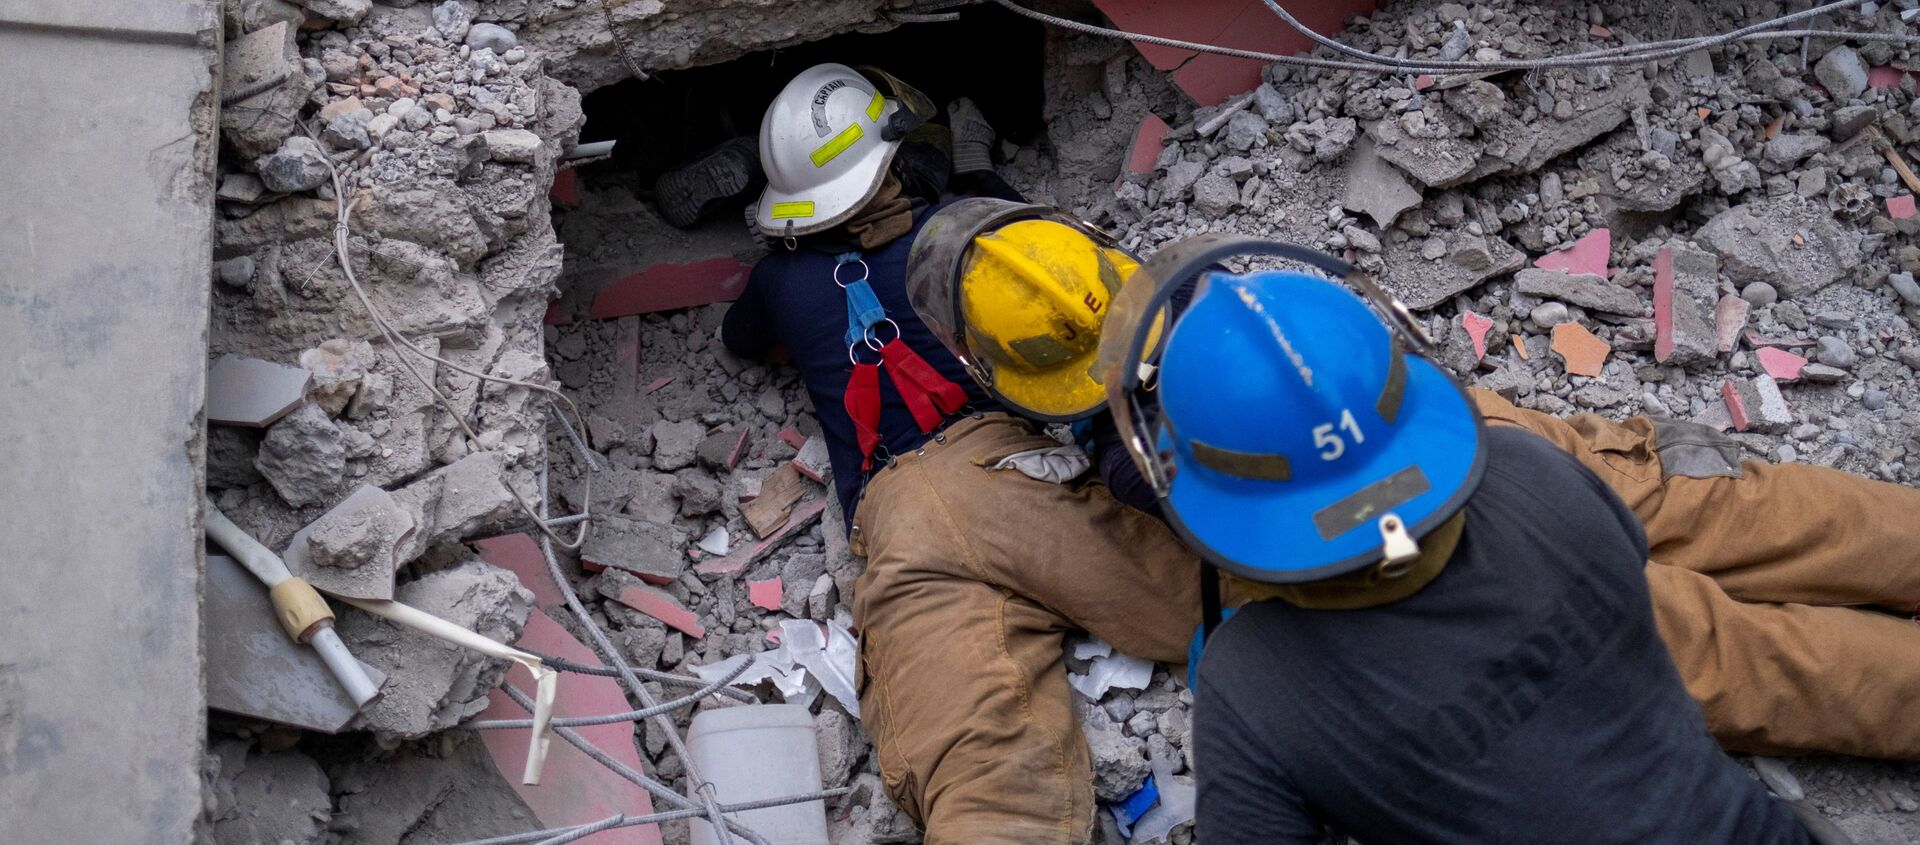 ハイチ南西部のレ・カイで、地震で倒壊したホテルの瓦礫の下で生存者を探す消防隊員ら - Sputnik 日本, 1920, 17.08.2021